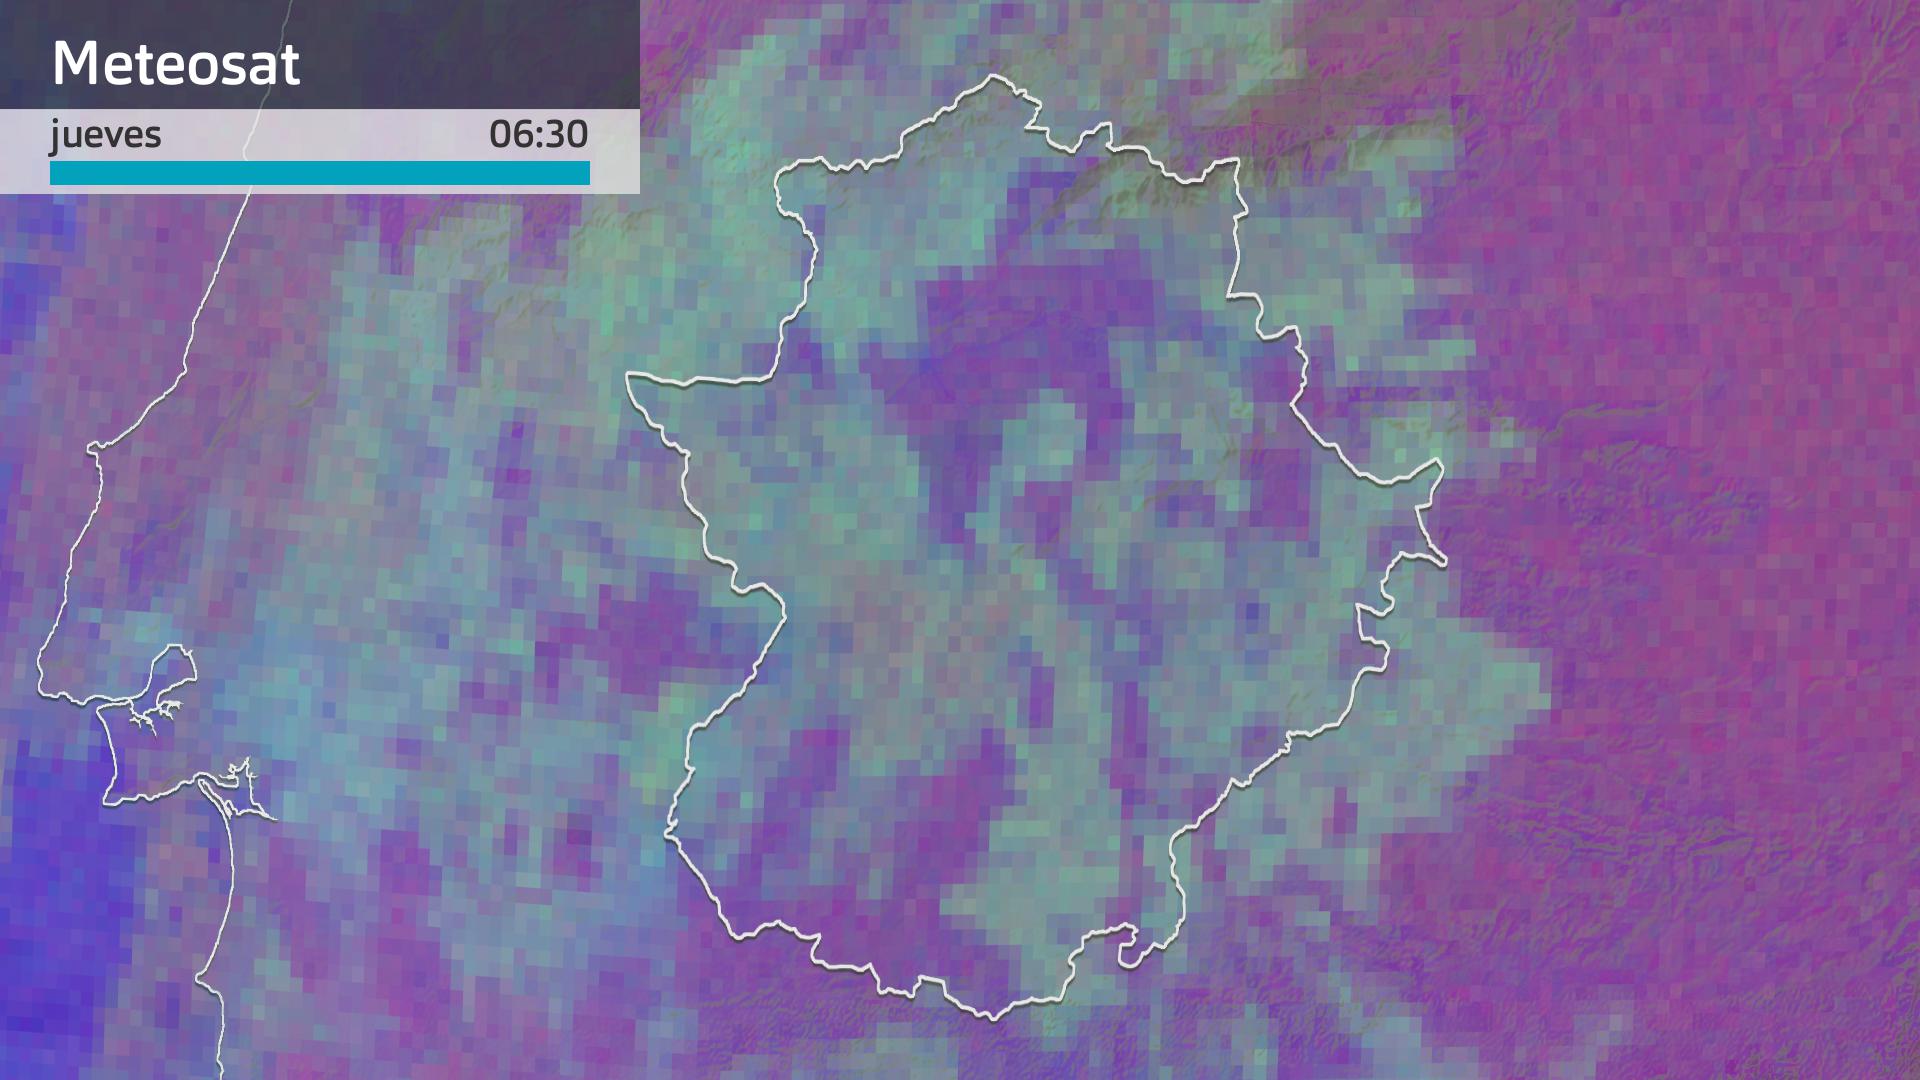 Imagen del Meteosat jueves 14 de marzo 6:30 h.